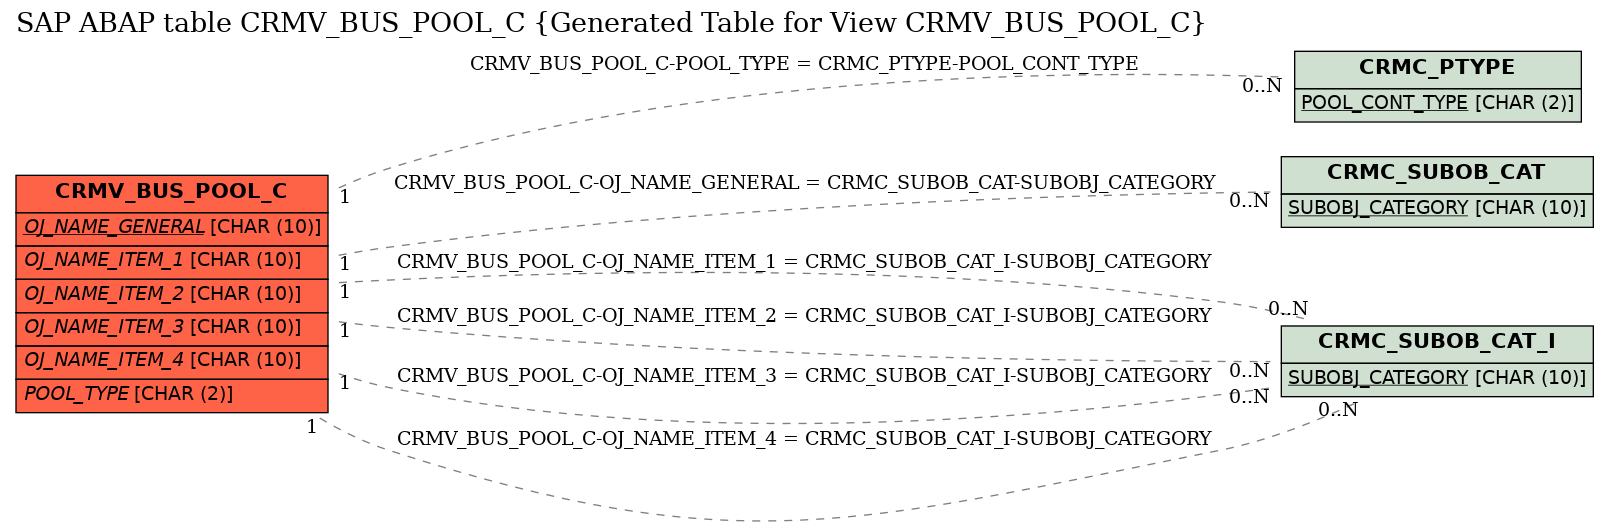 E-R Diagram for table CRMV_BUS_POOL_C (Generated Table for View CRMV_BUS_POOL_C)